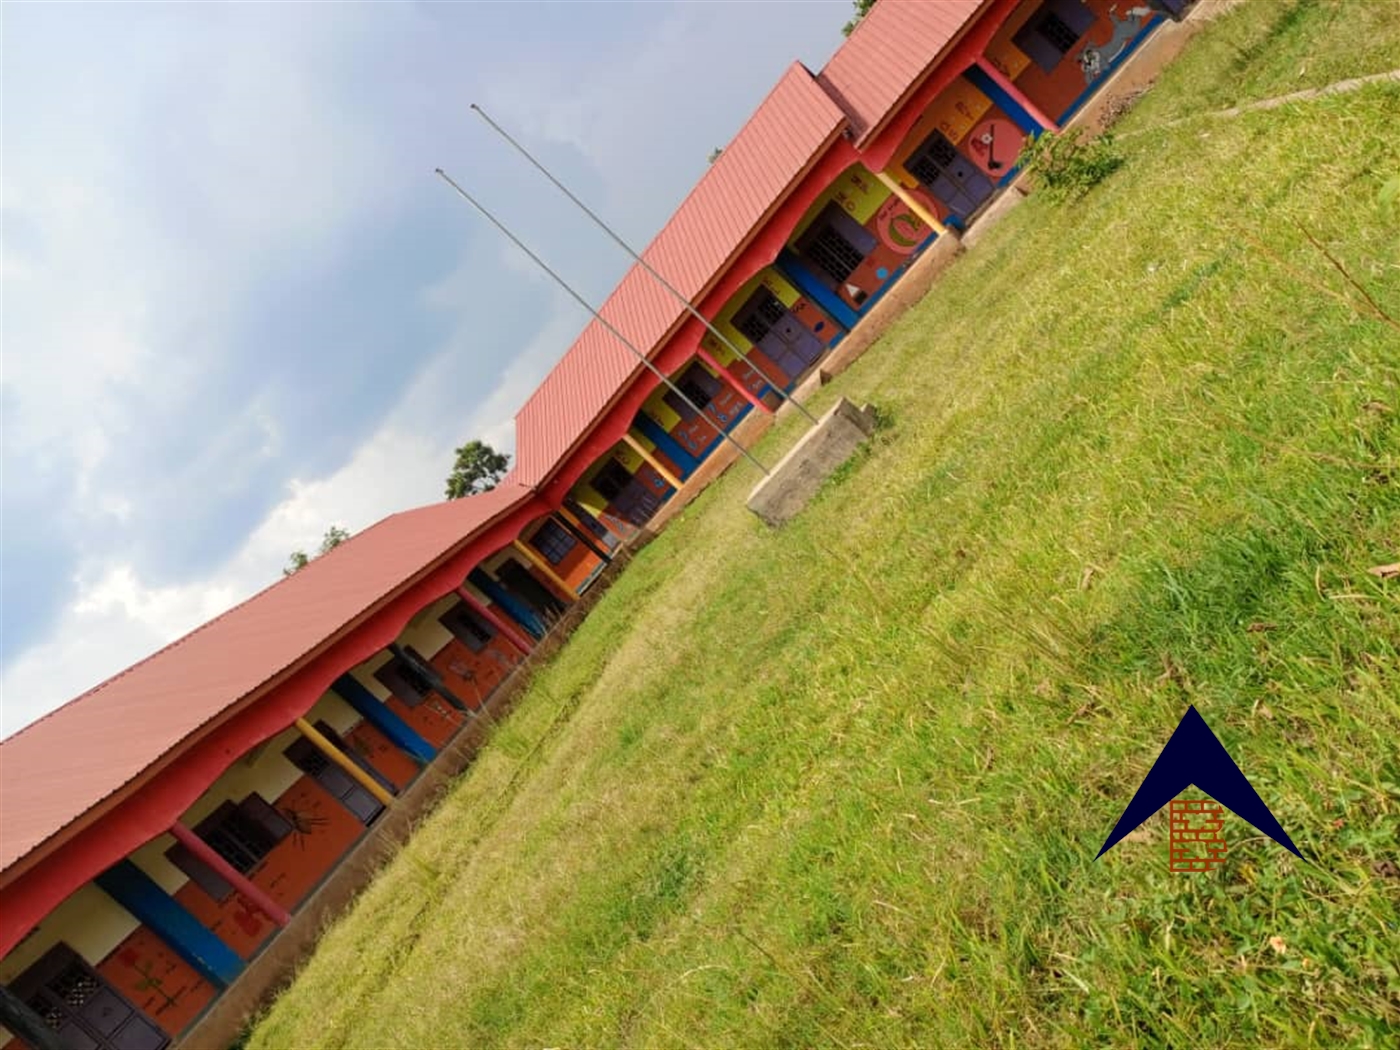 School for sale in Wobulanzi Luweero